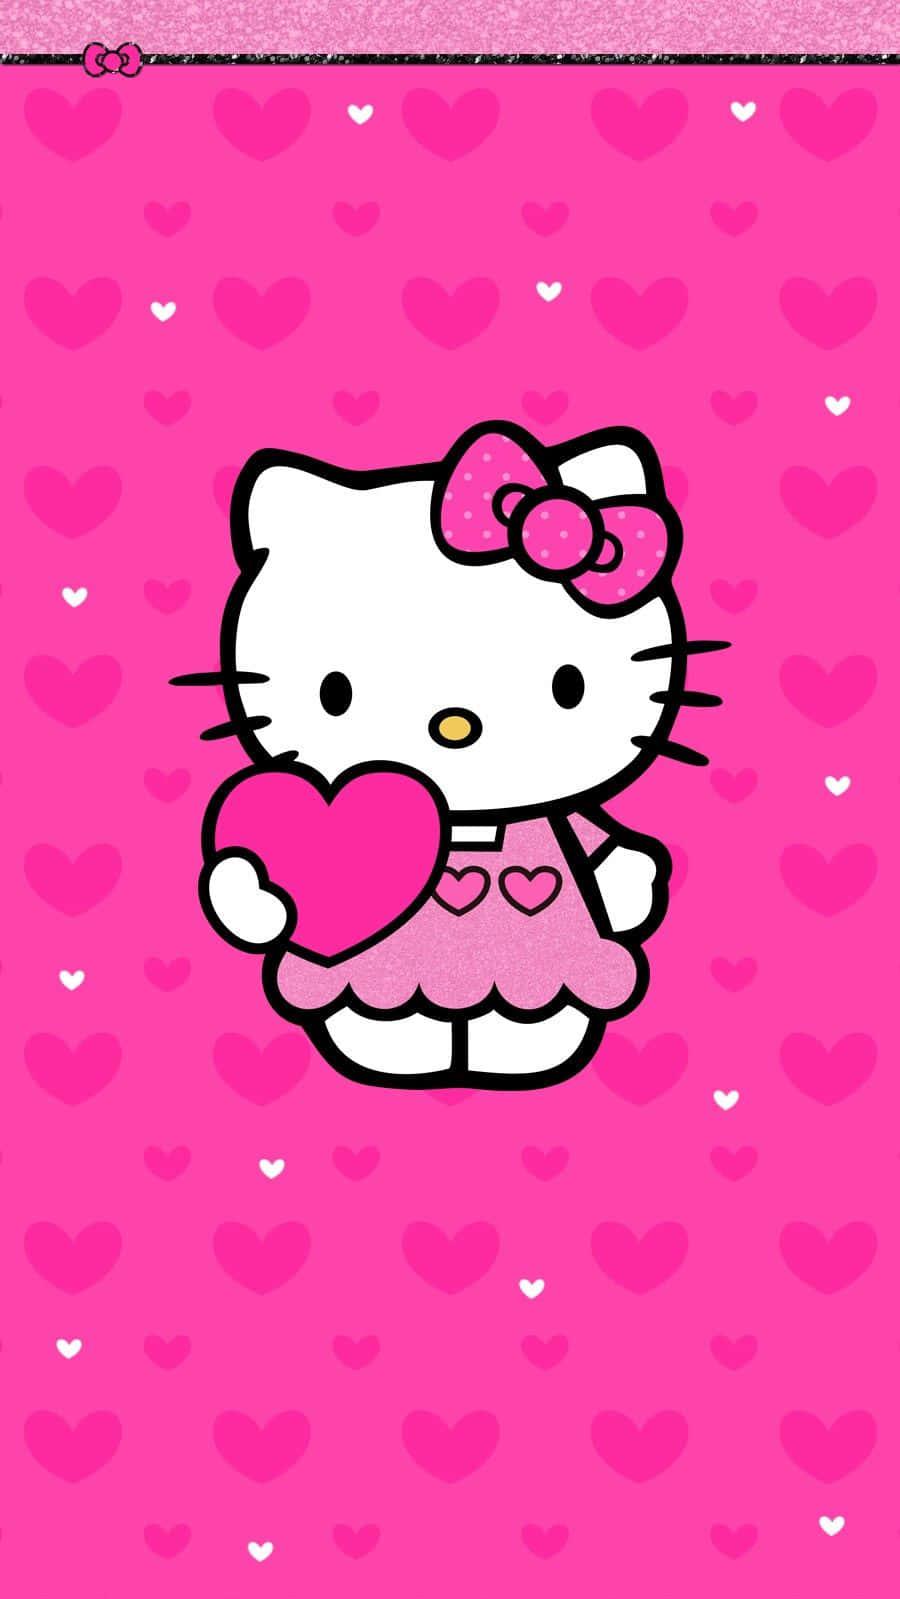 Adorable Kawaii Hello Kitty Wallpaper For Your Phone